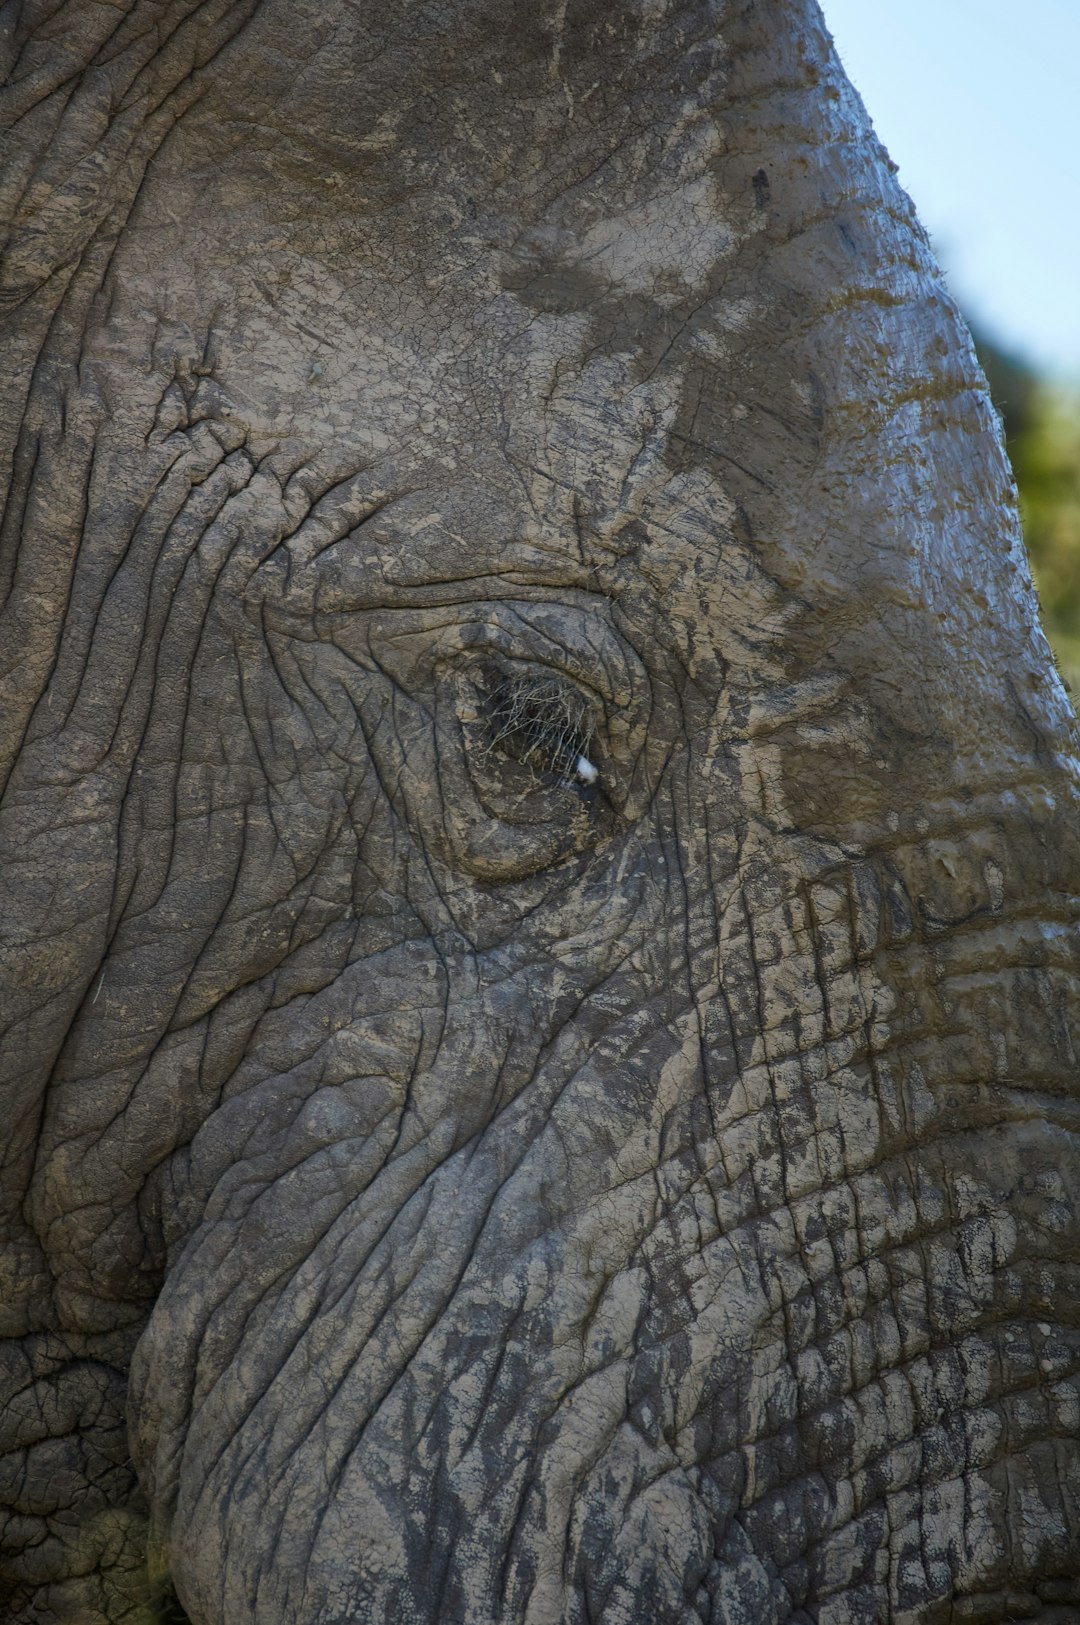 close up photo of elephant